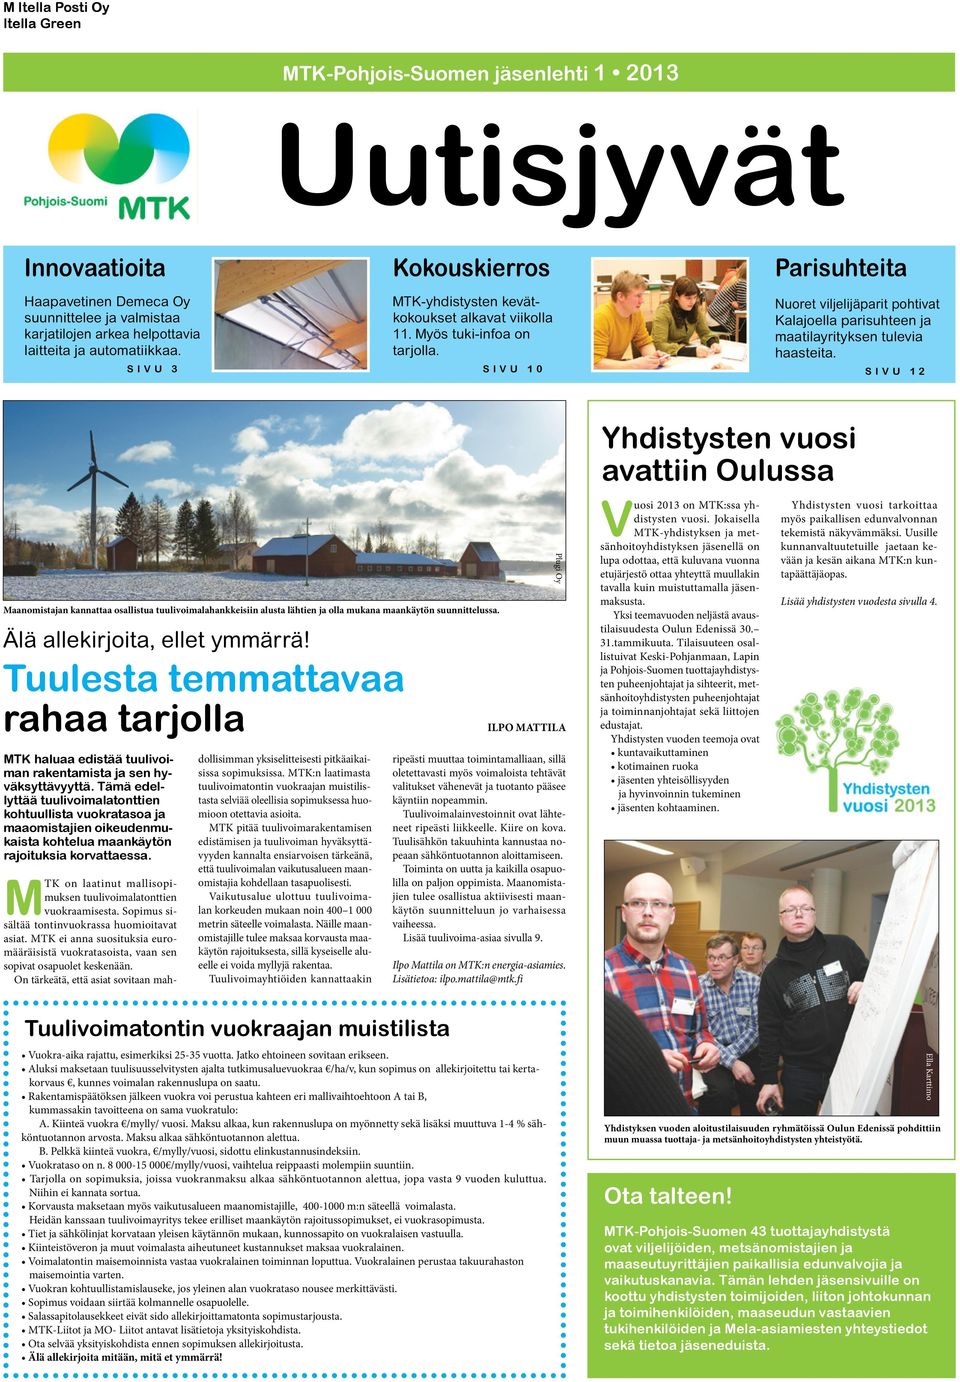 SIVU 10 Parisuhteita Nuoret viljelijäparit pohtivat Kalajoella parisuhteen ja maatilayrityksen tulevia haasteita.